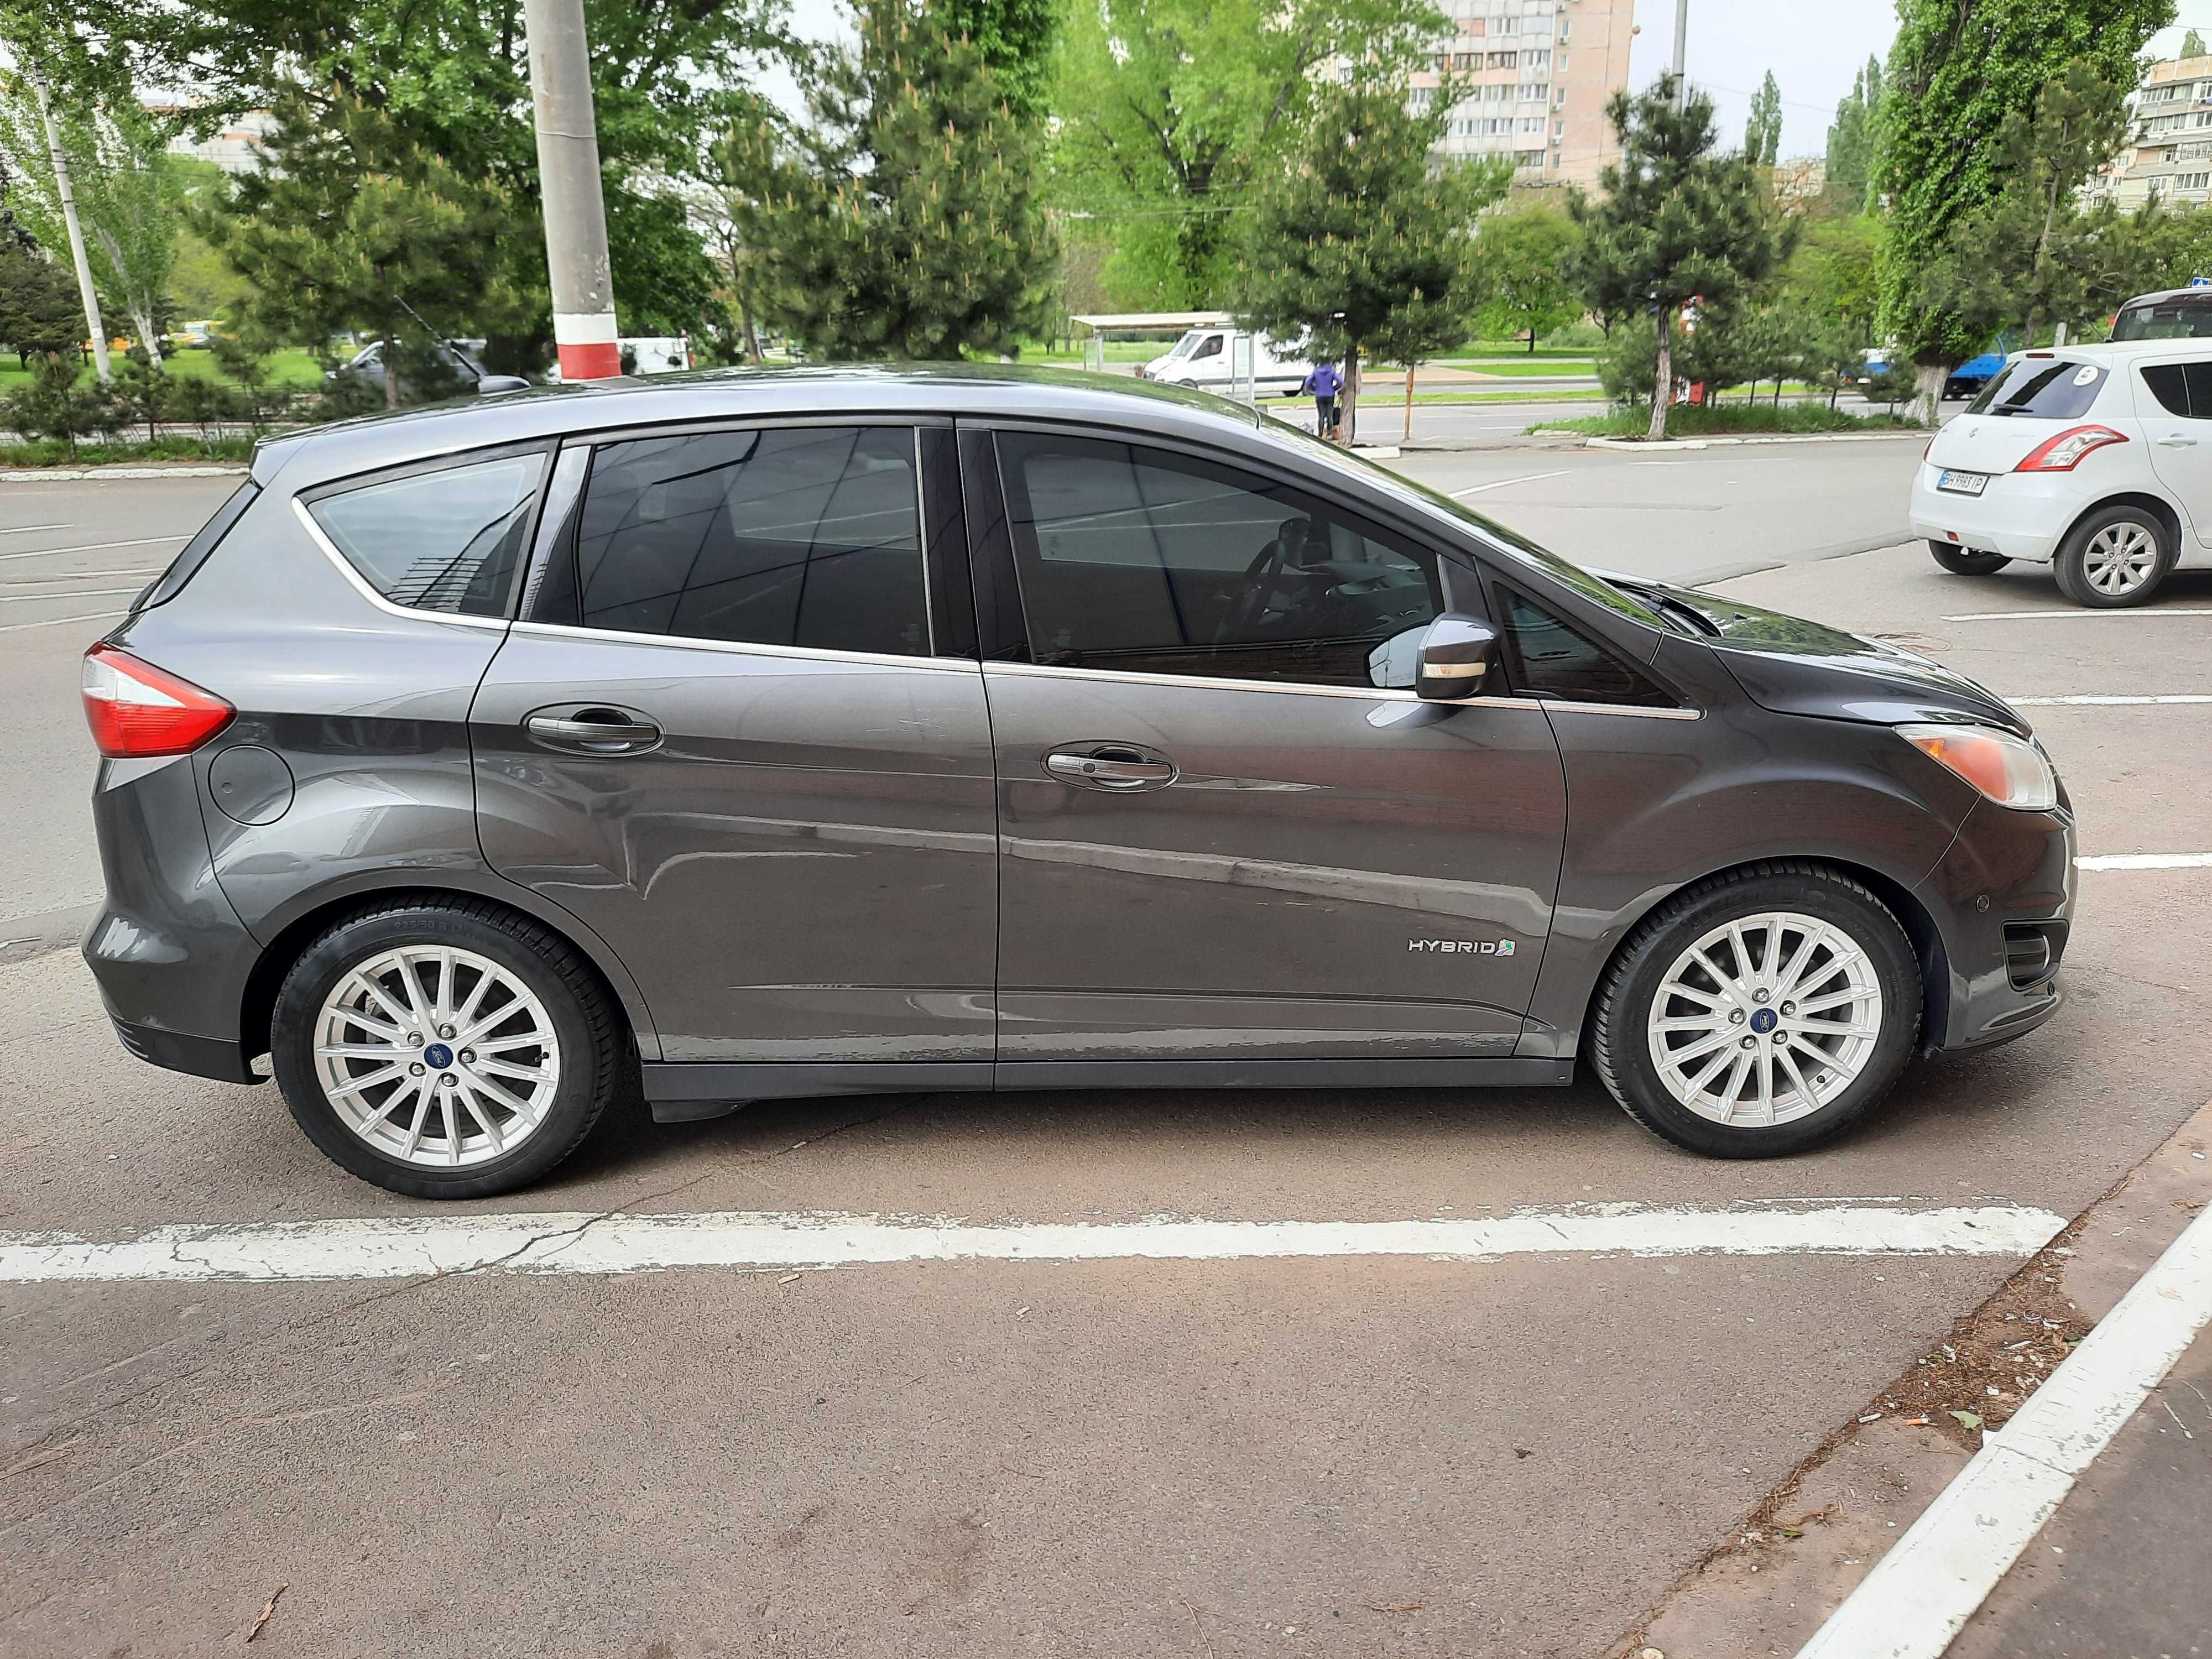 Ford C-Max  SEL 2016 Г.В. ГИБРИД